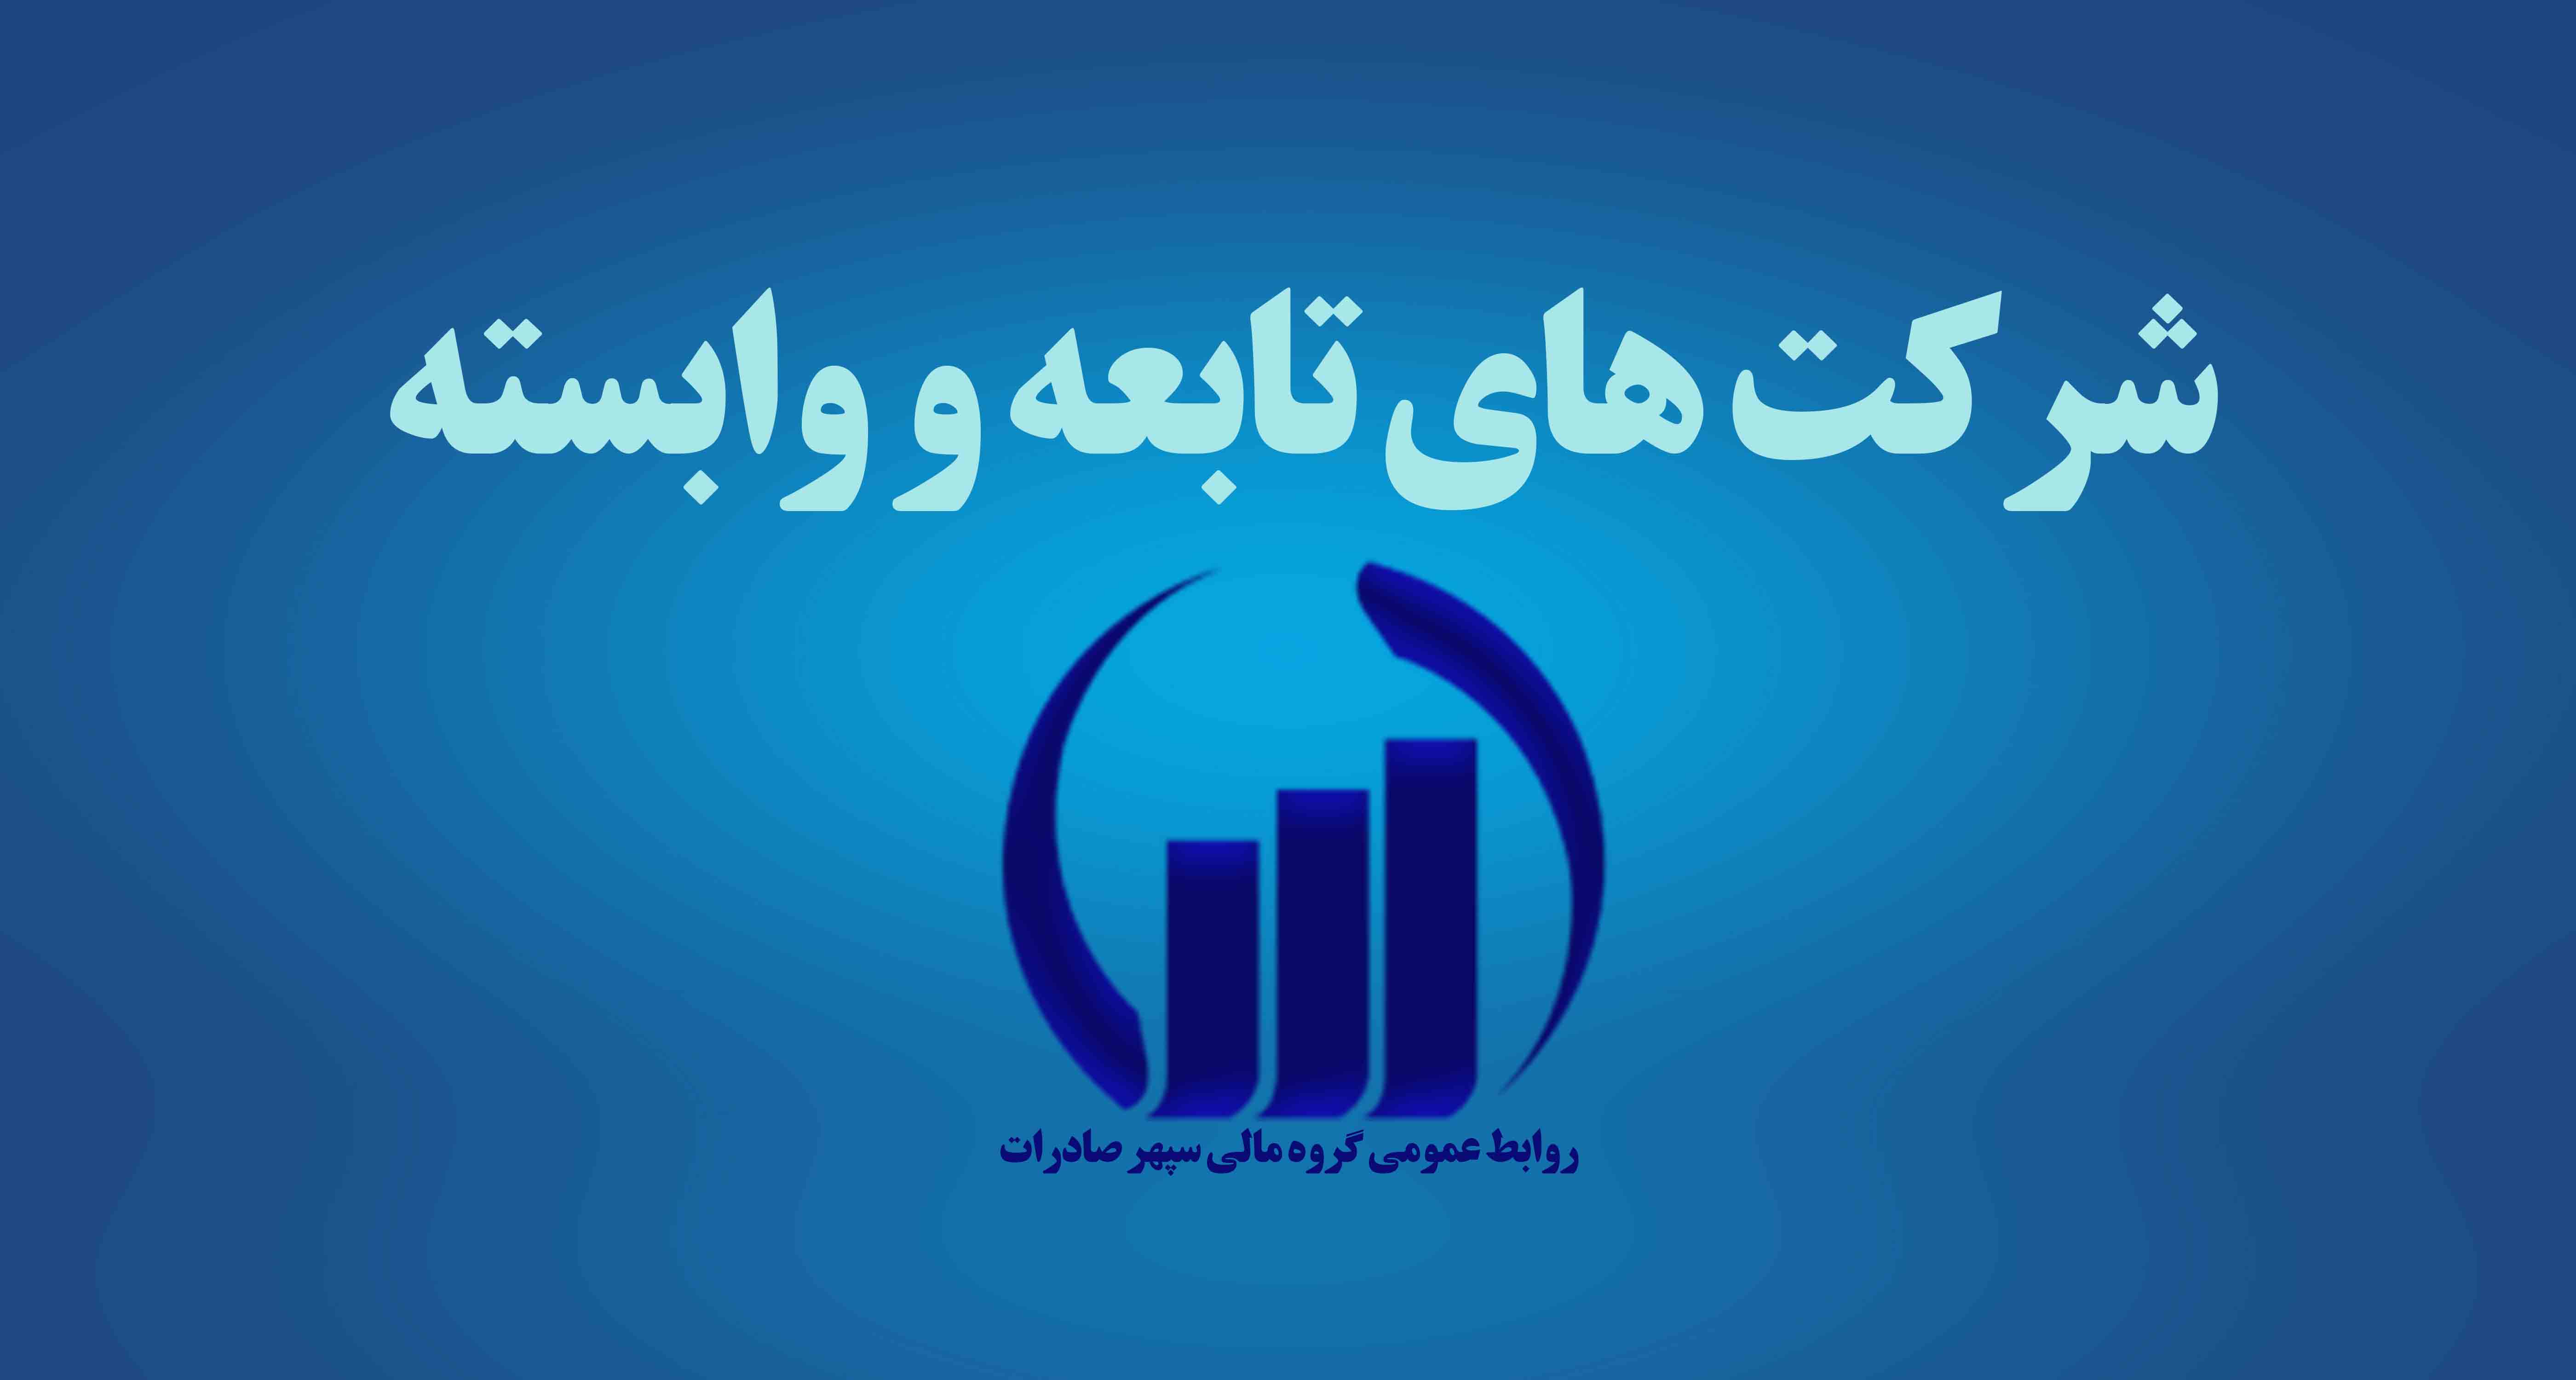 صنایع نیرو گسترش کردستان  (سهامی خاص)